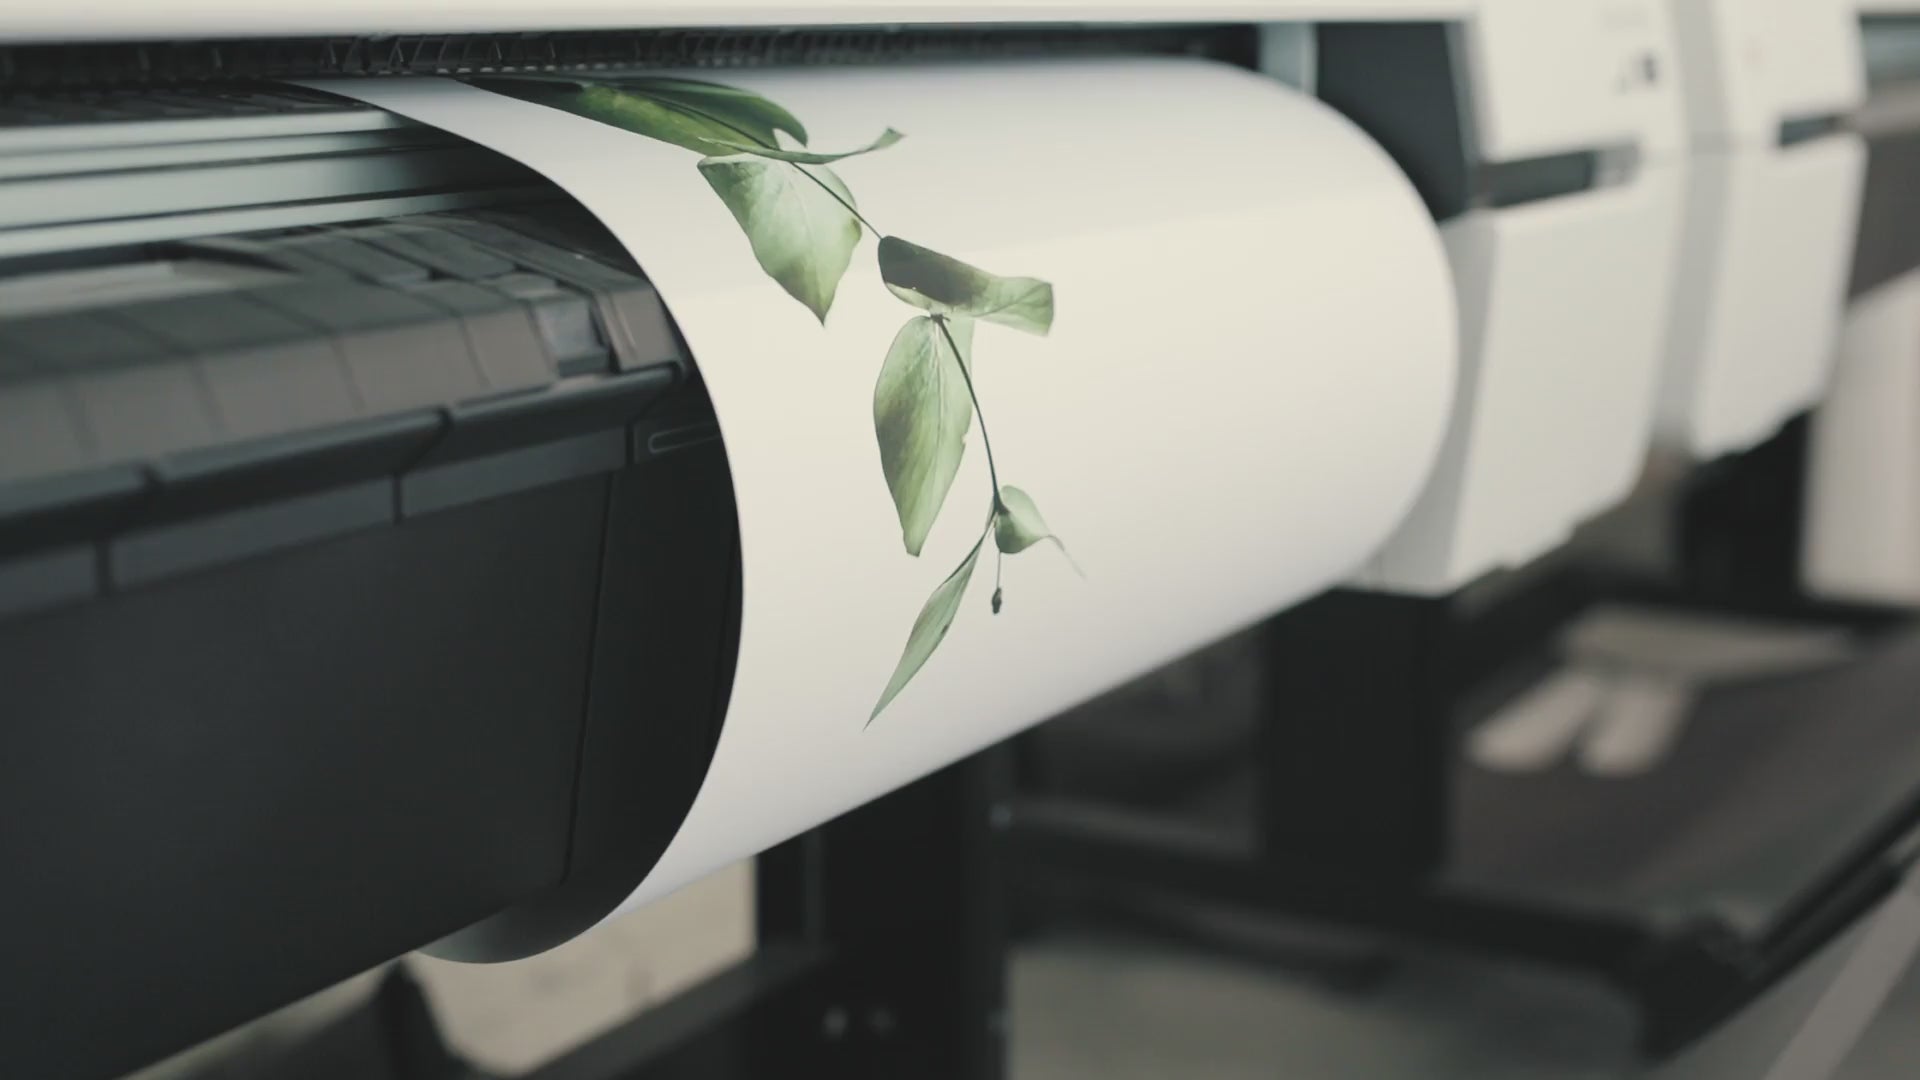 Load video: عرض عملية الطباعة على الكانفس